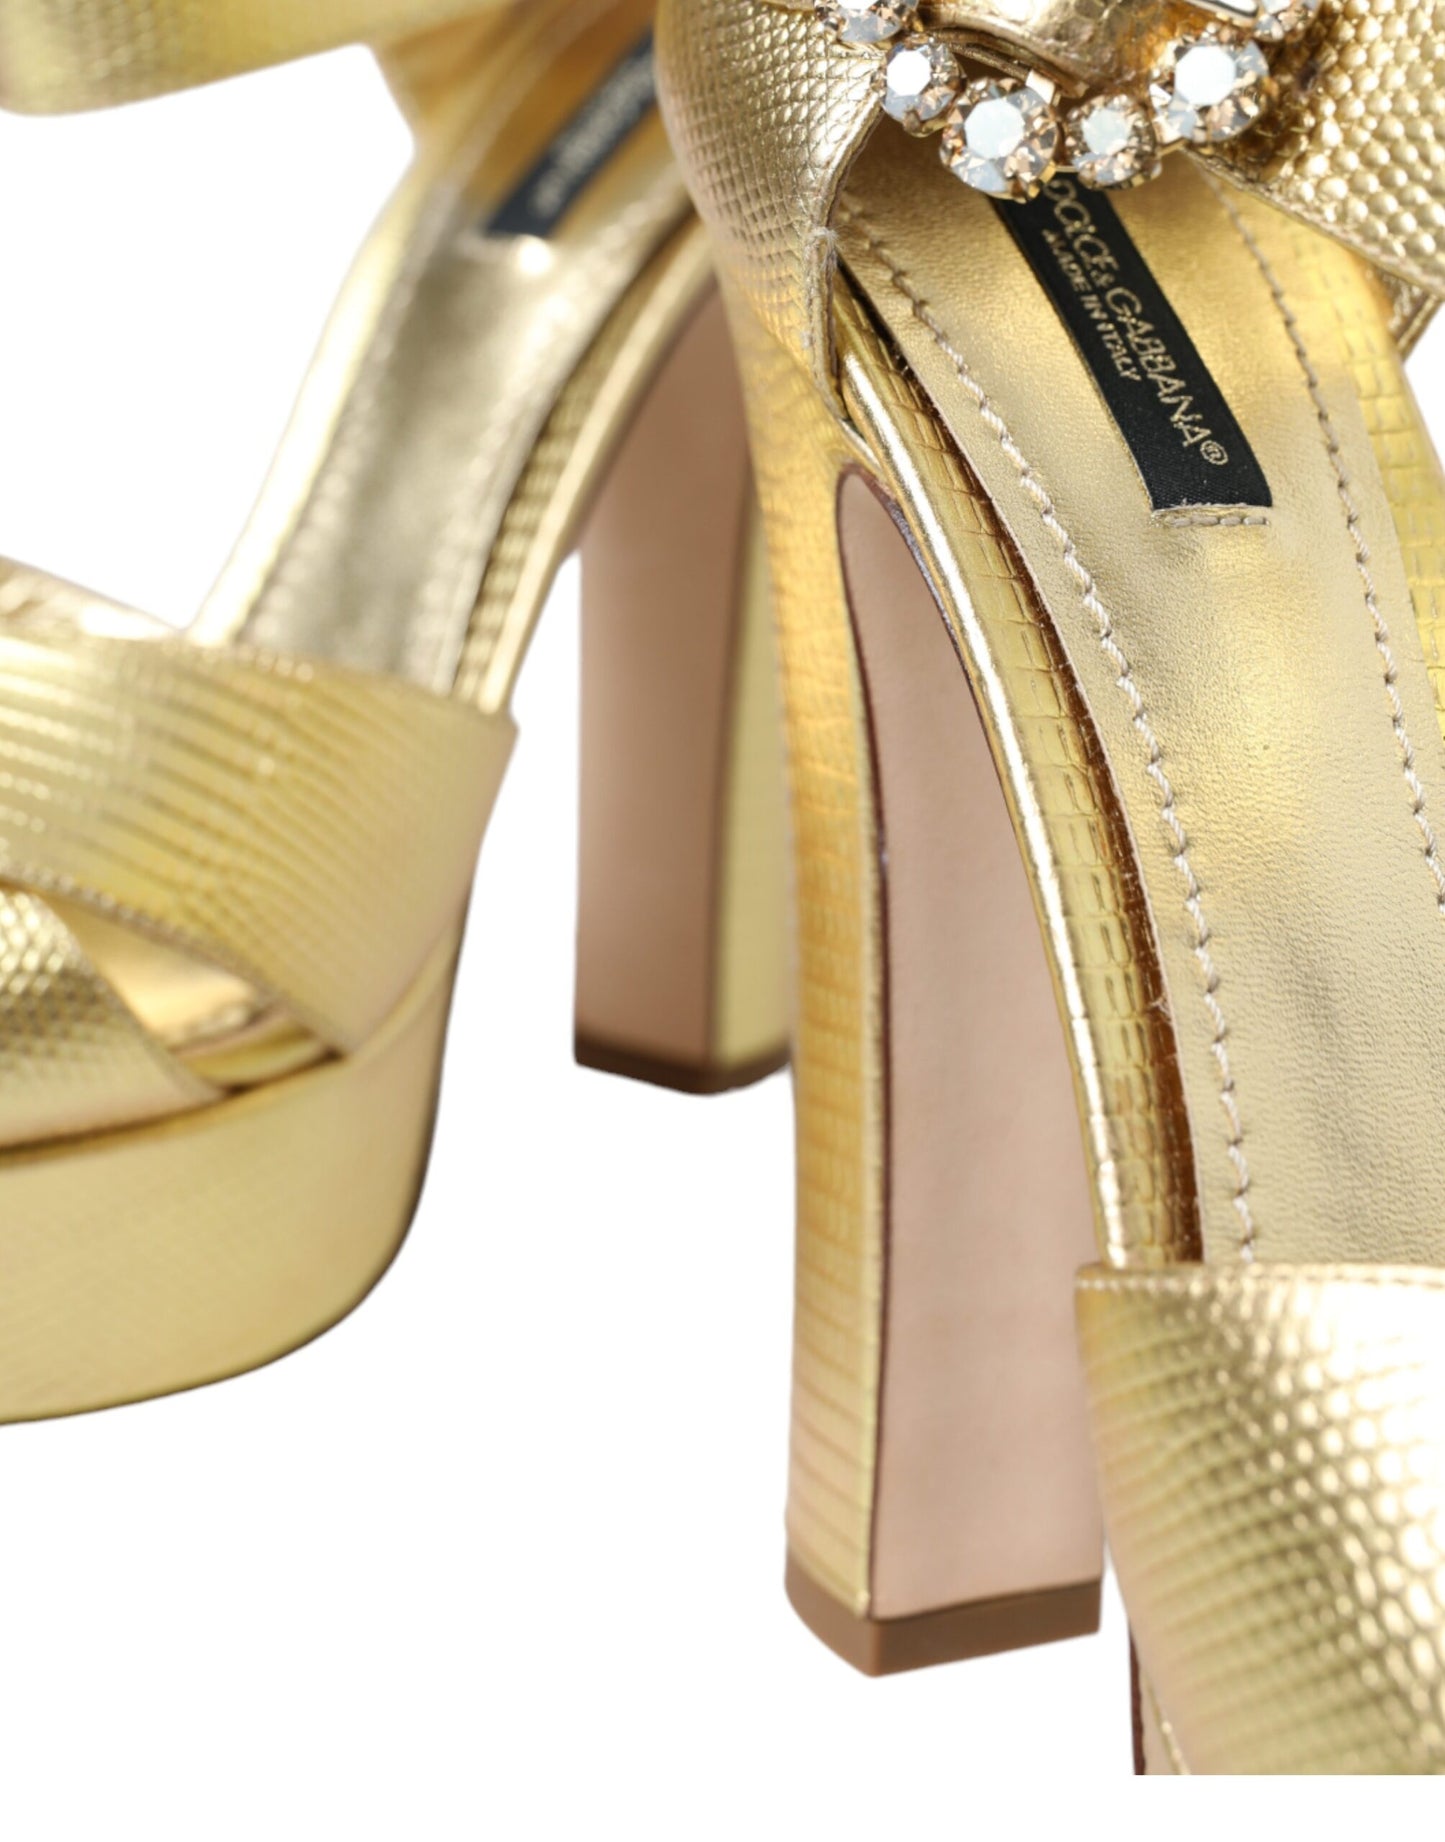 Gold Crystal-Embellished Leather Sandals